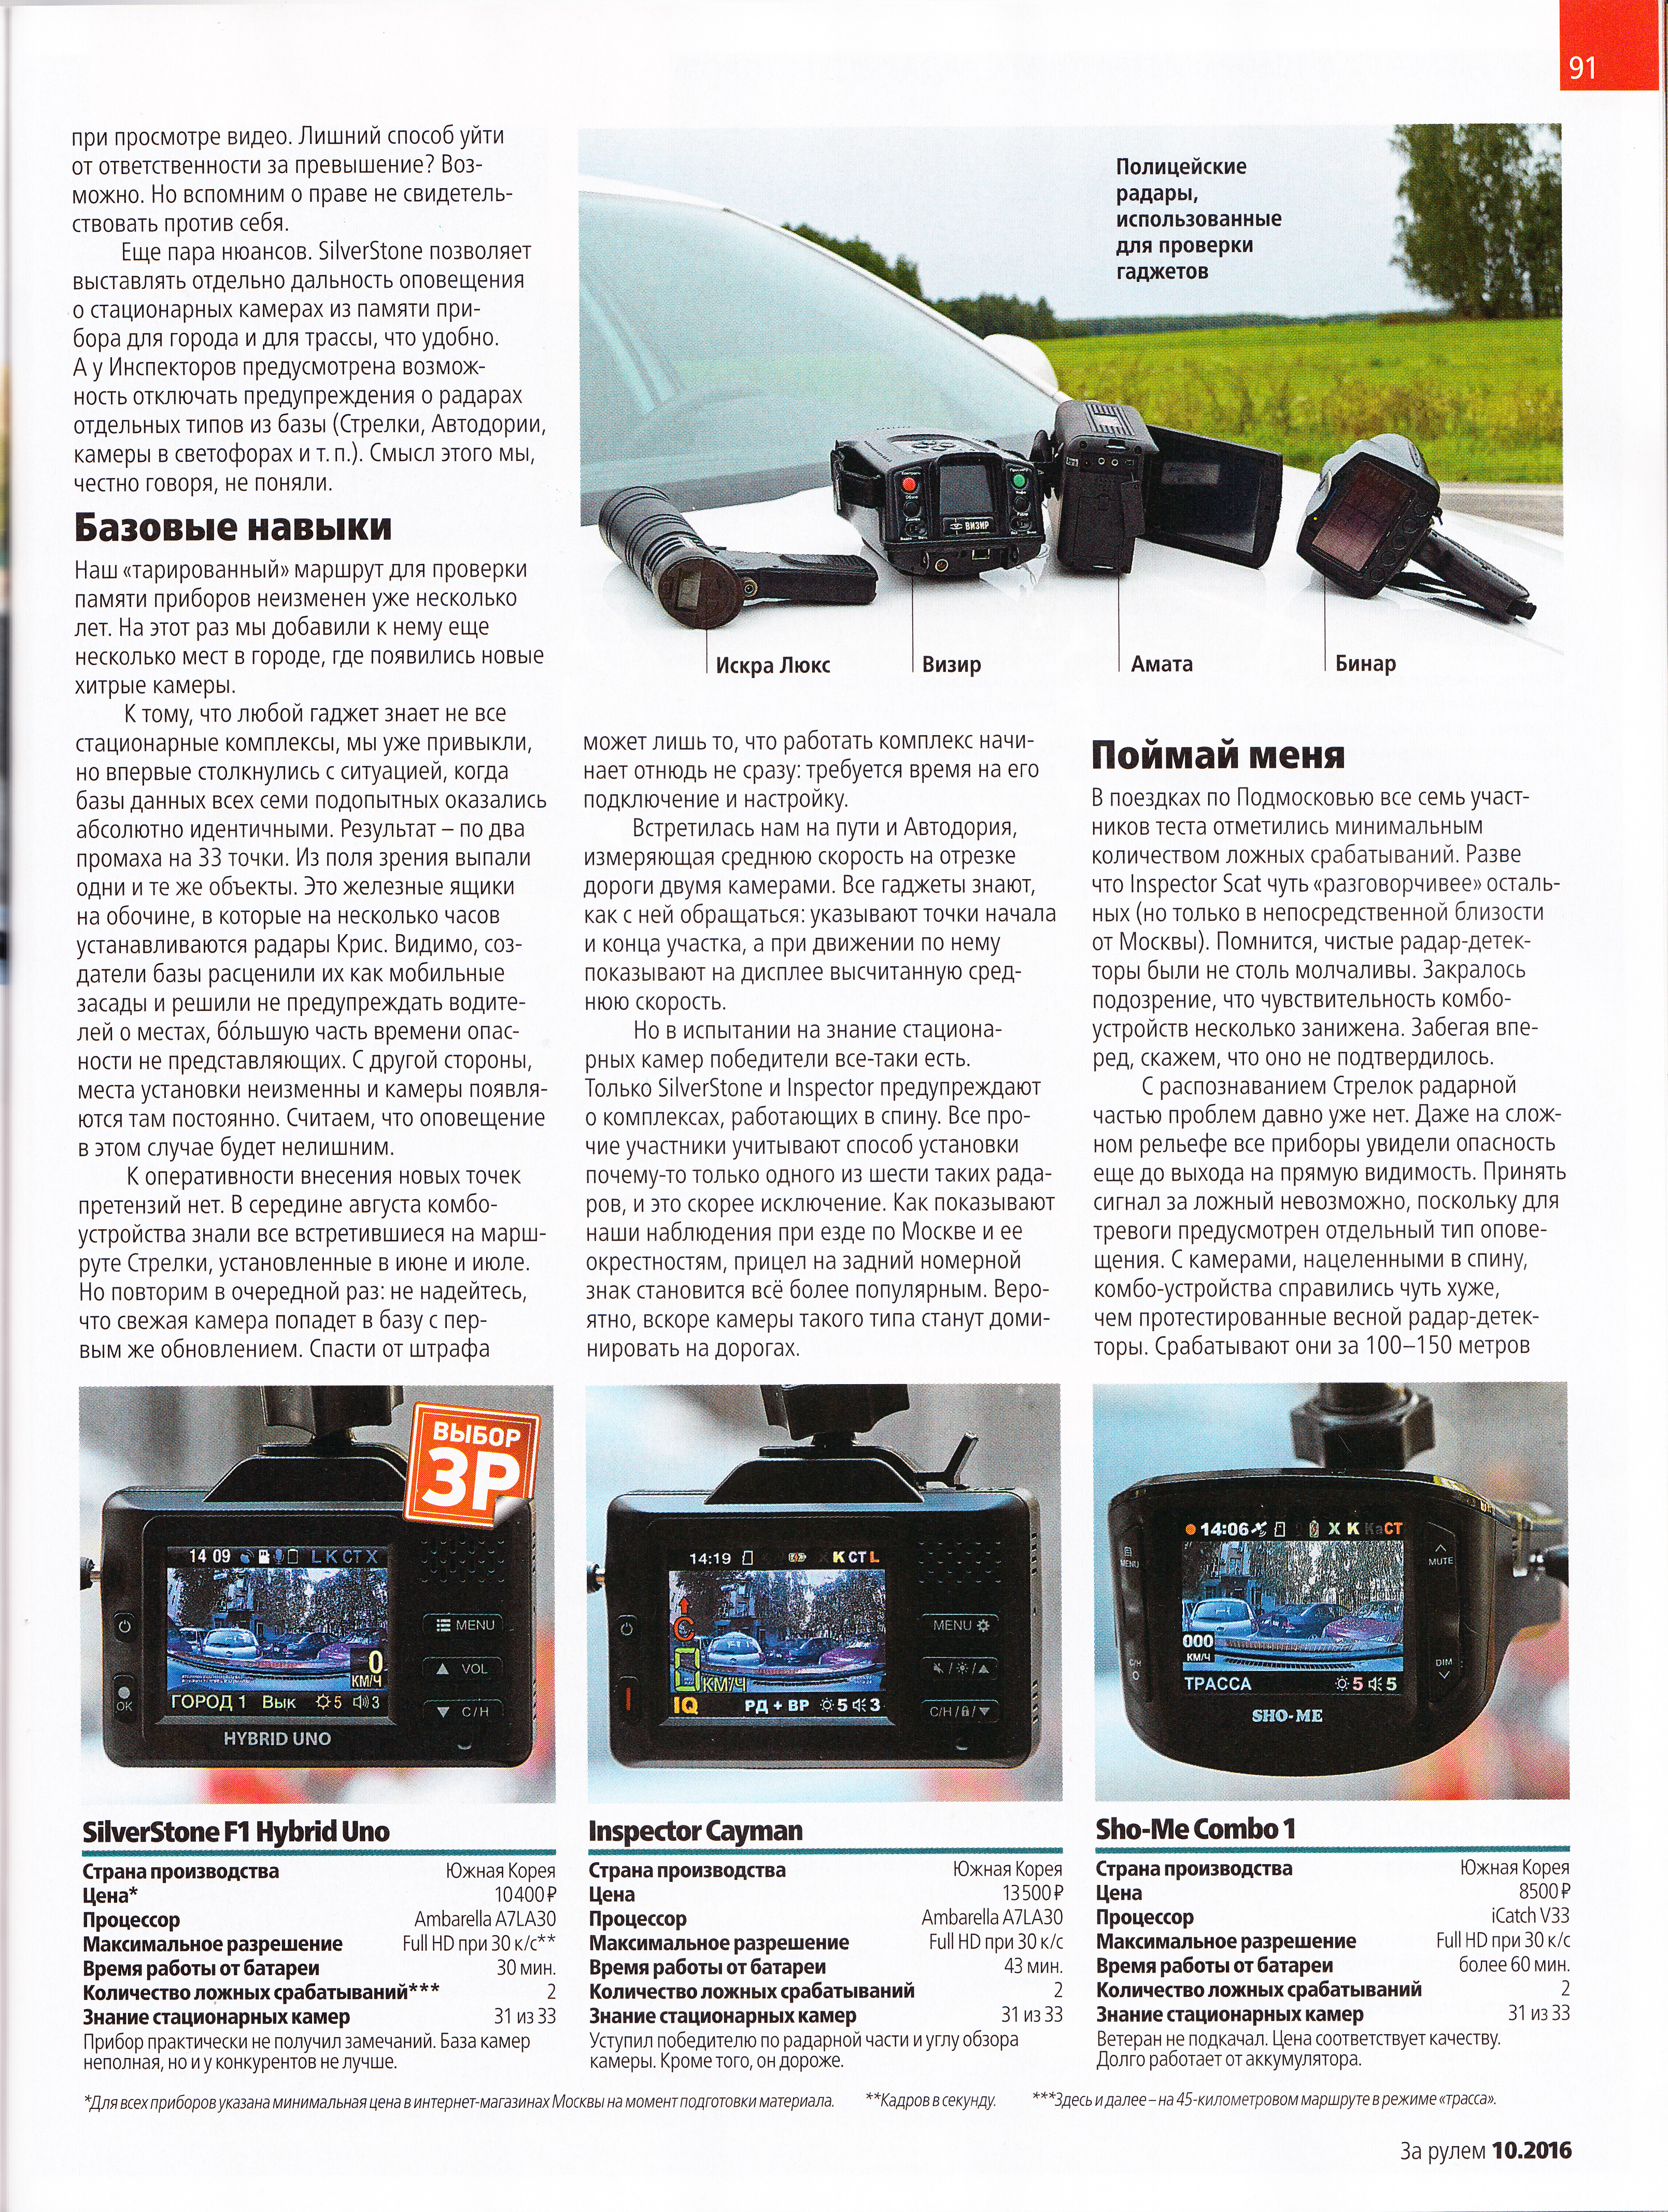 Комбо-устройство SilverStone Hybrid UNO в тесте журнала За Рулём